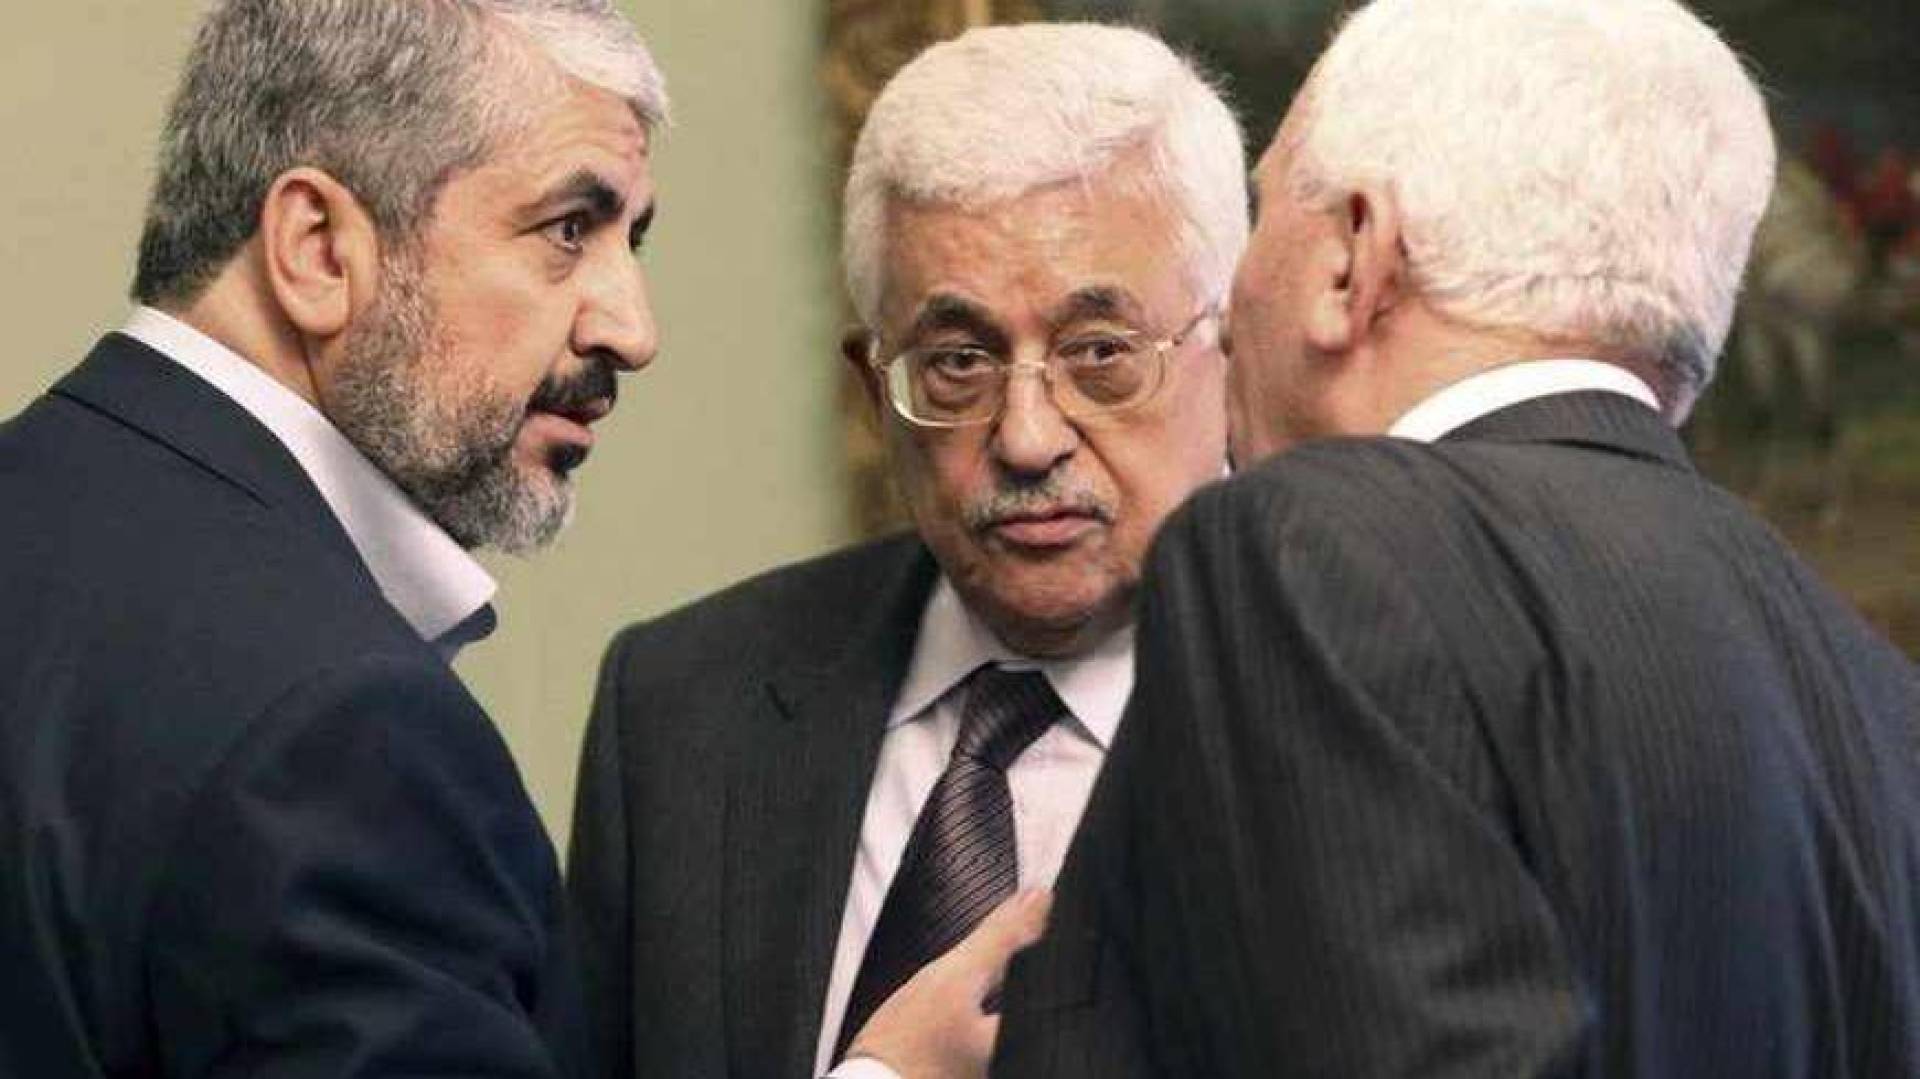 دمج حماس في المنظمة .. دول عربية تعد مبادرة بشأن اليوم التالي للحرب